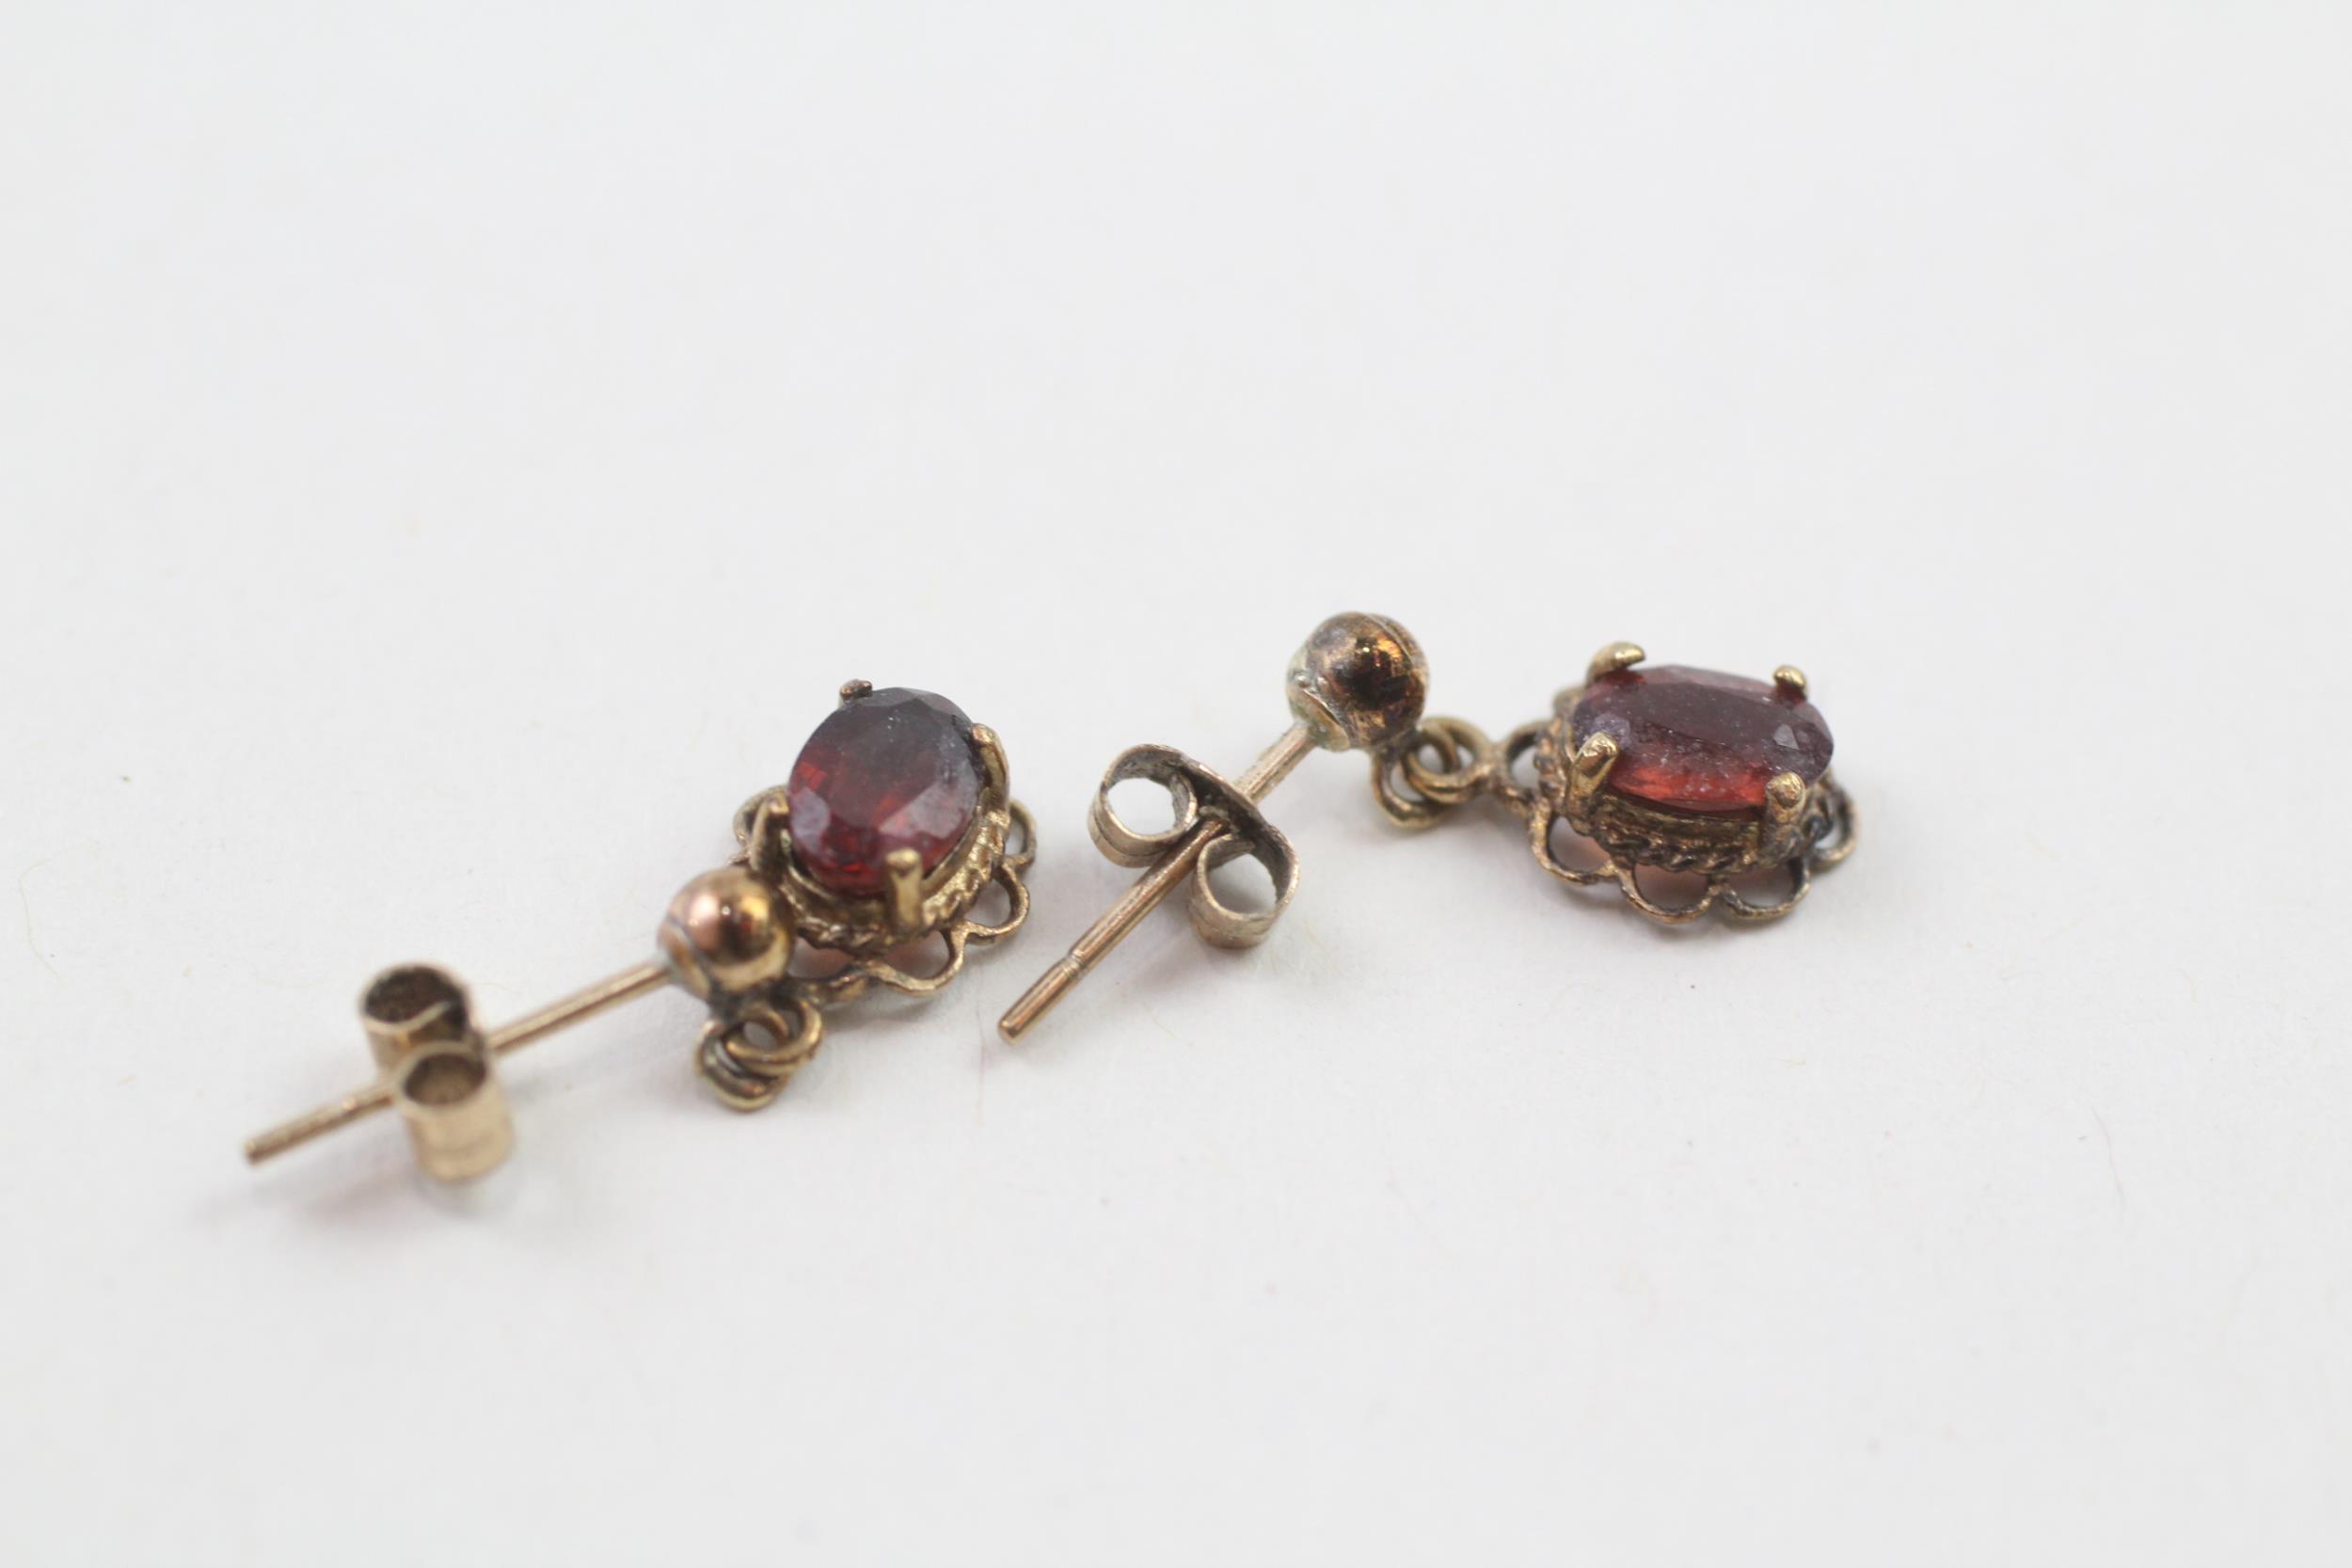 9ct gold oval cut garnet drop earrings (1.1g) - Image 4 of 4